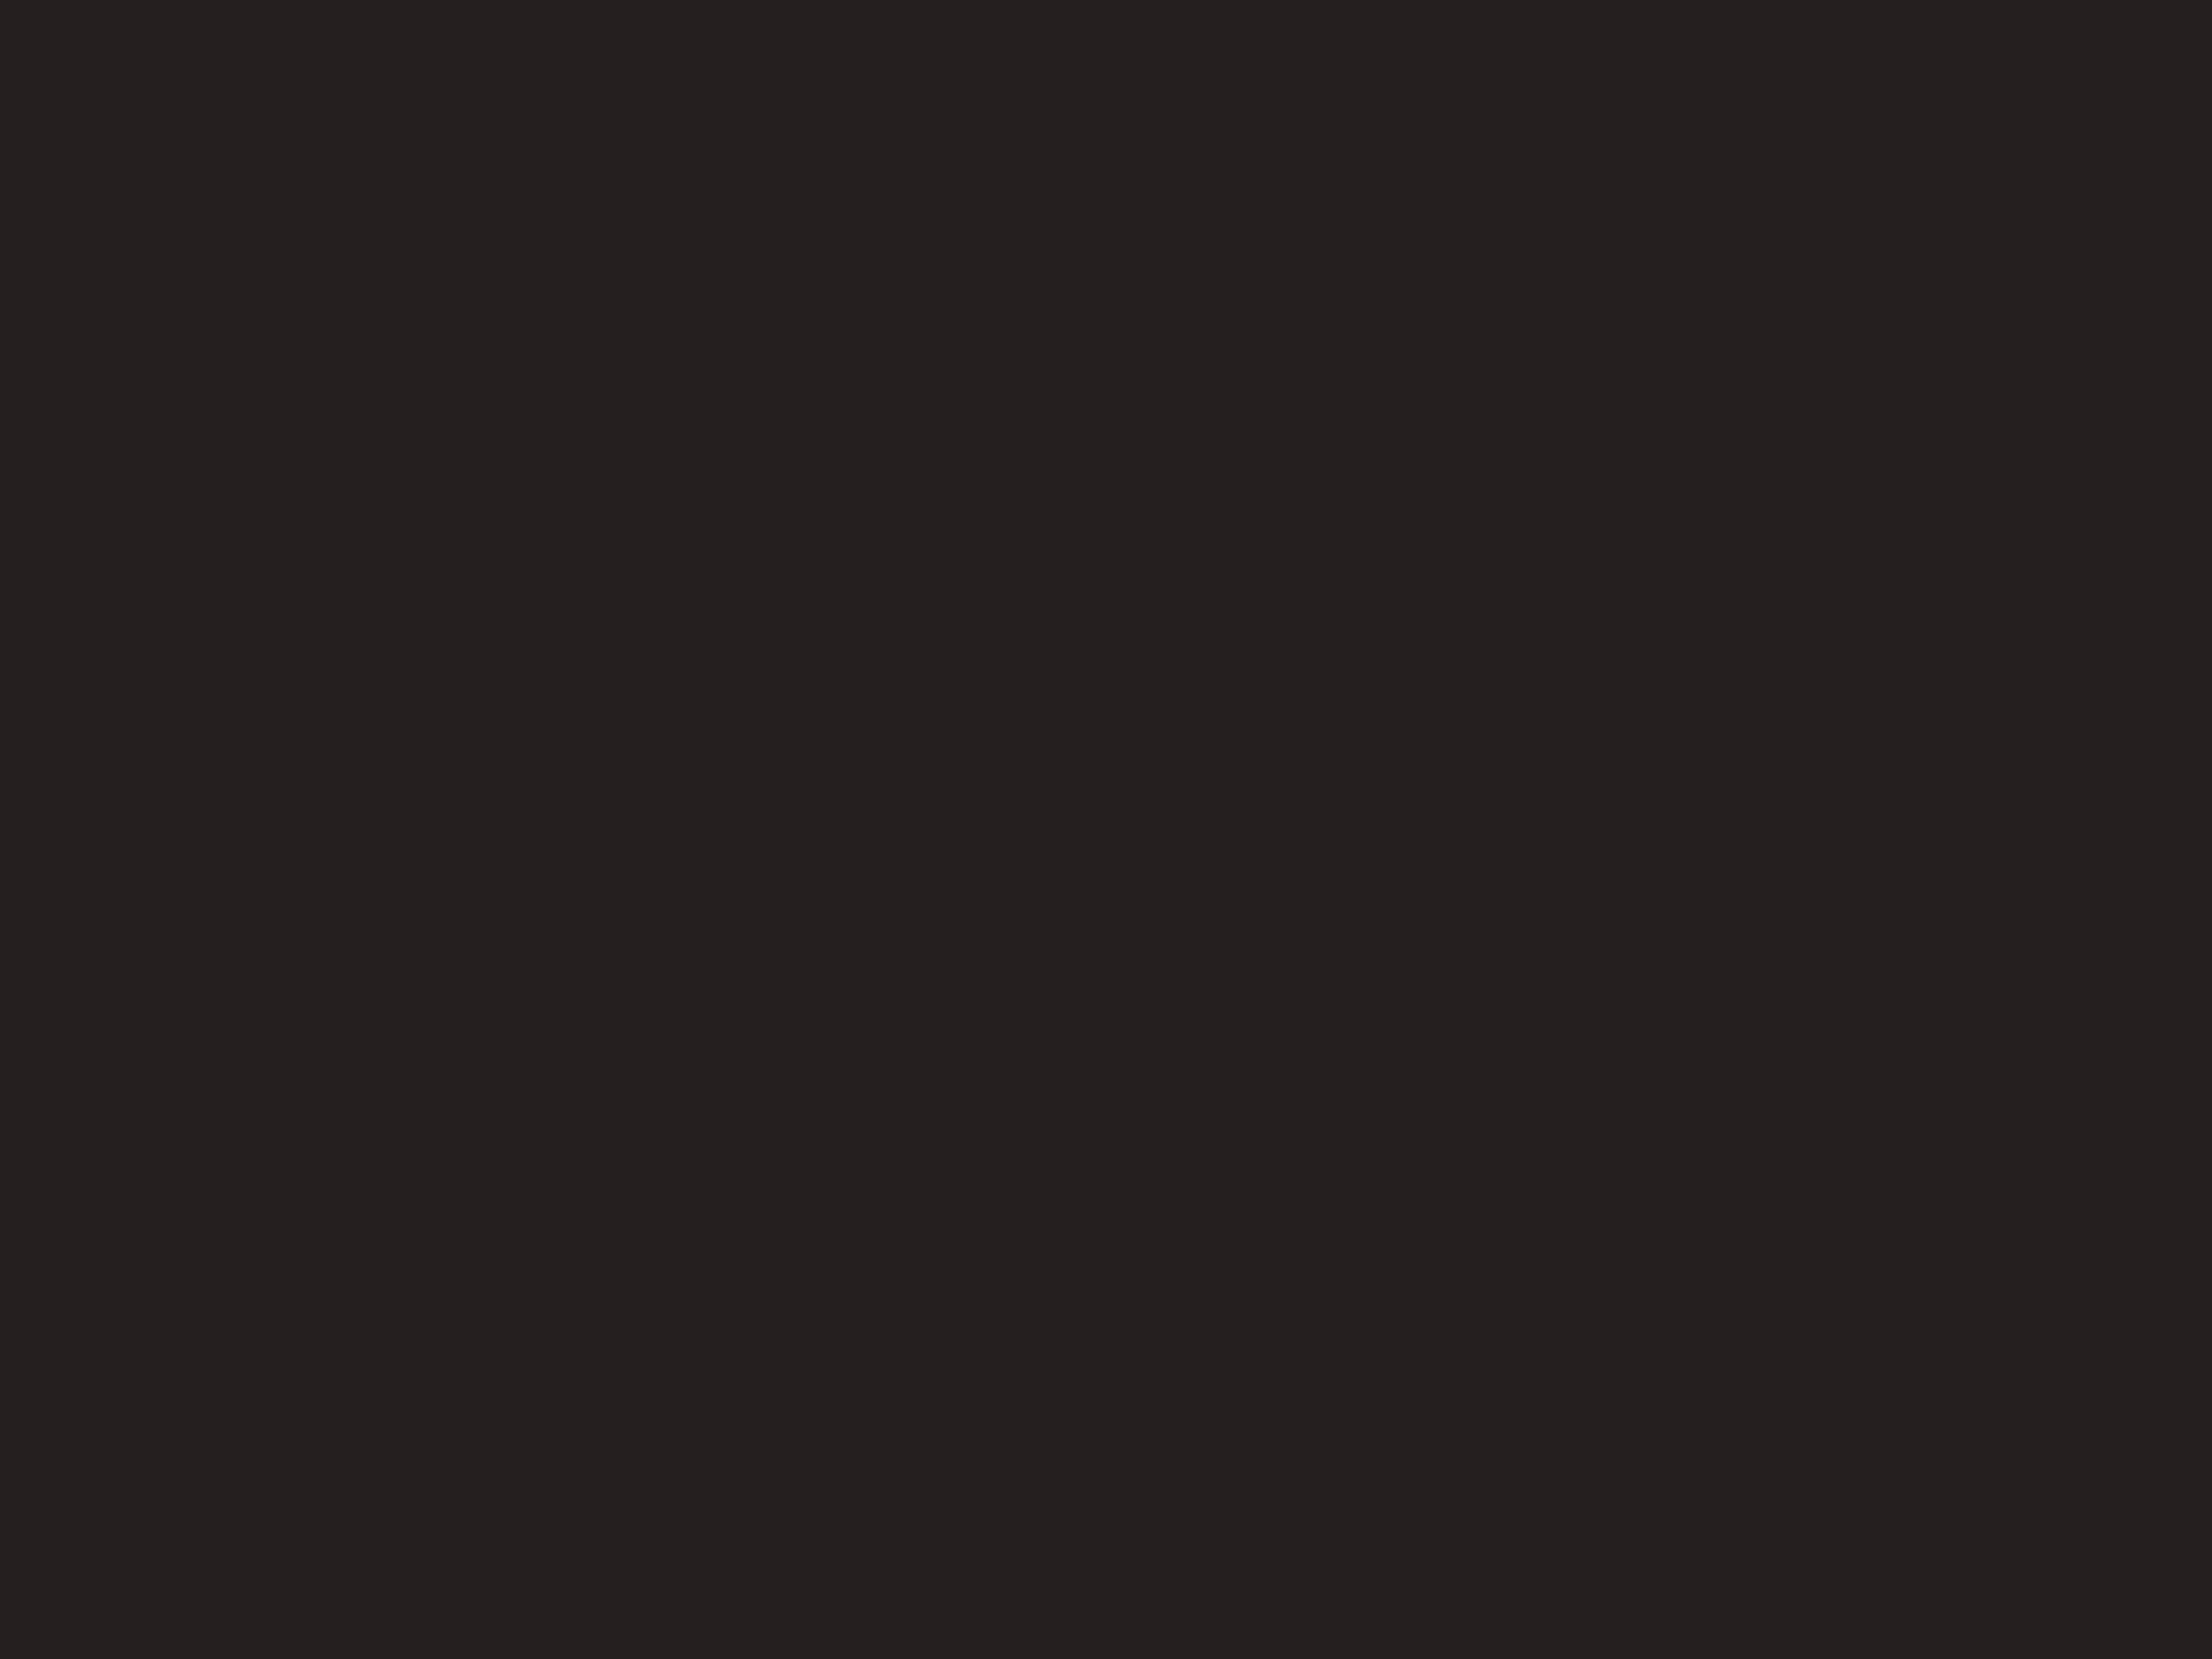 Сцена из спектакля Ренаты Литвиновой «Северный ветер». 2017 год. Московский художественный театр имени А.П. Чехова, Москва. Фотография: Артем Коротаев / ТАСС